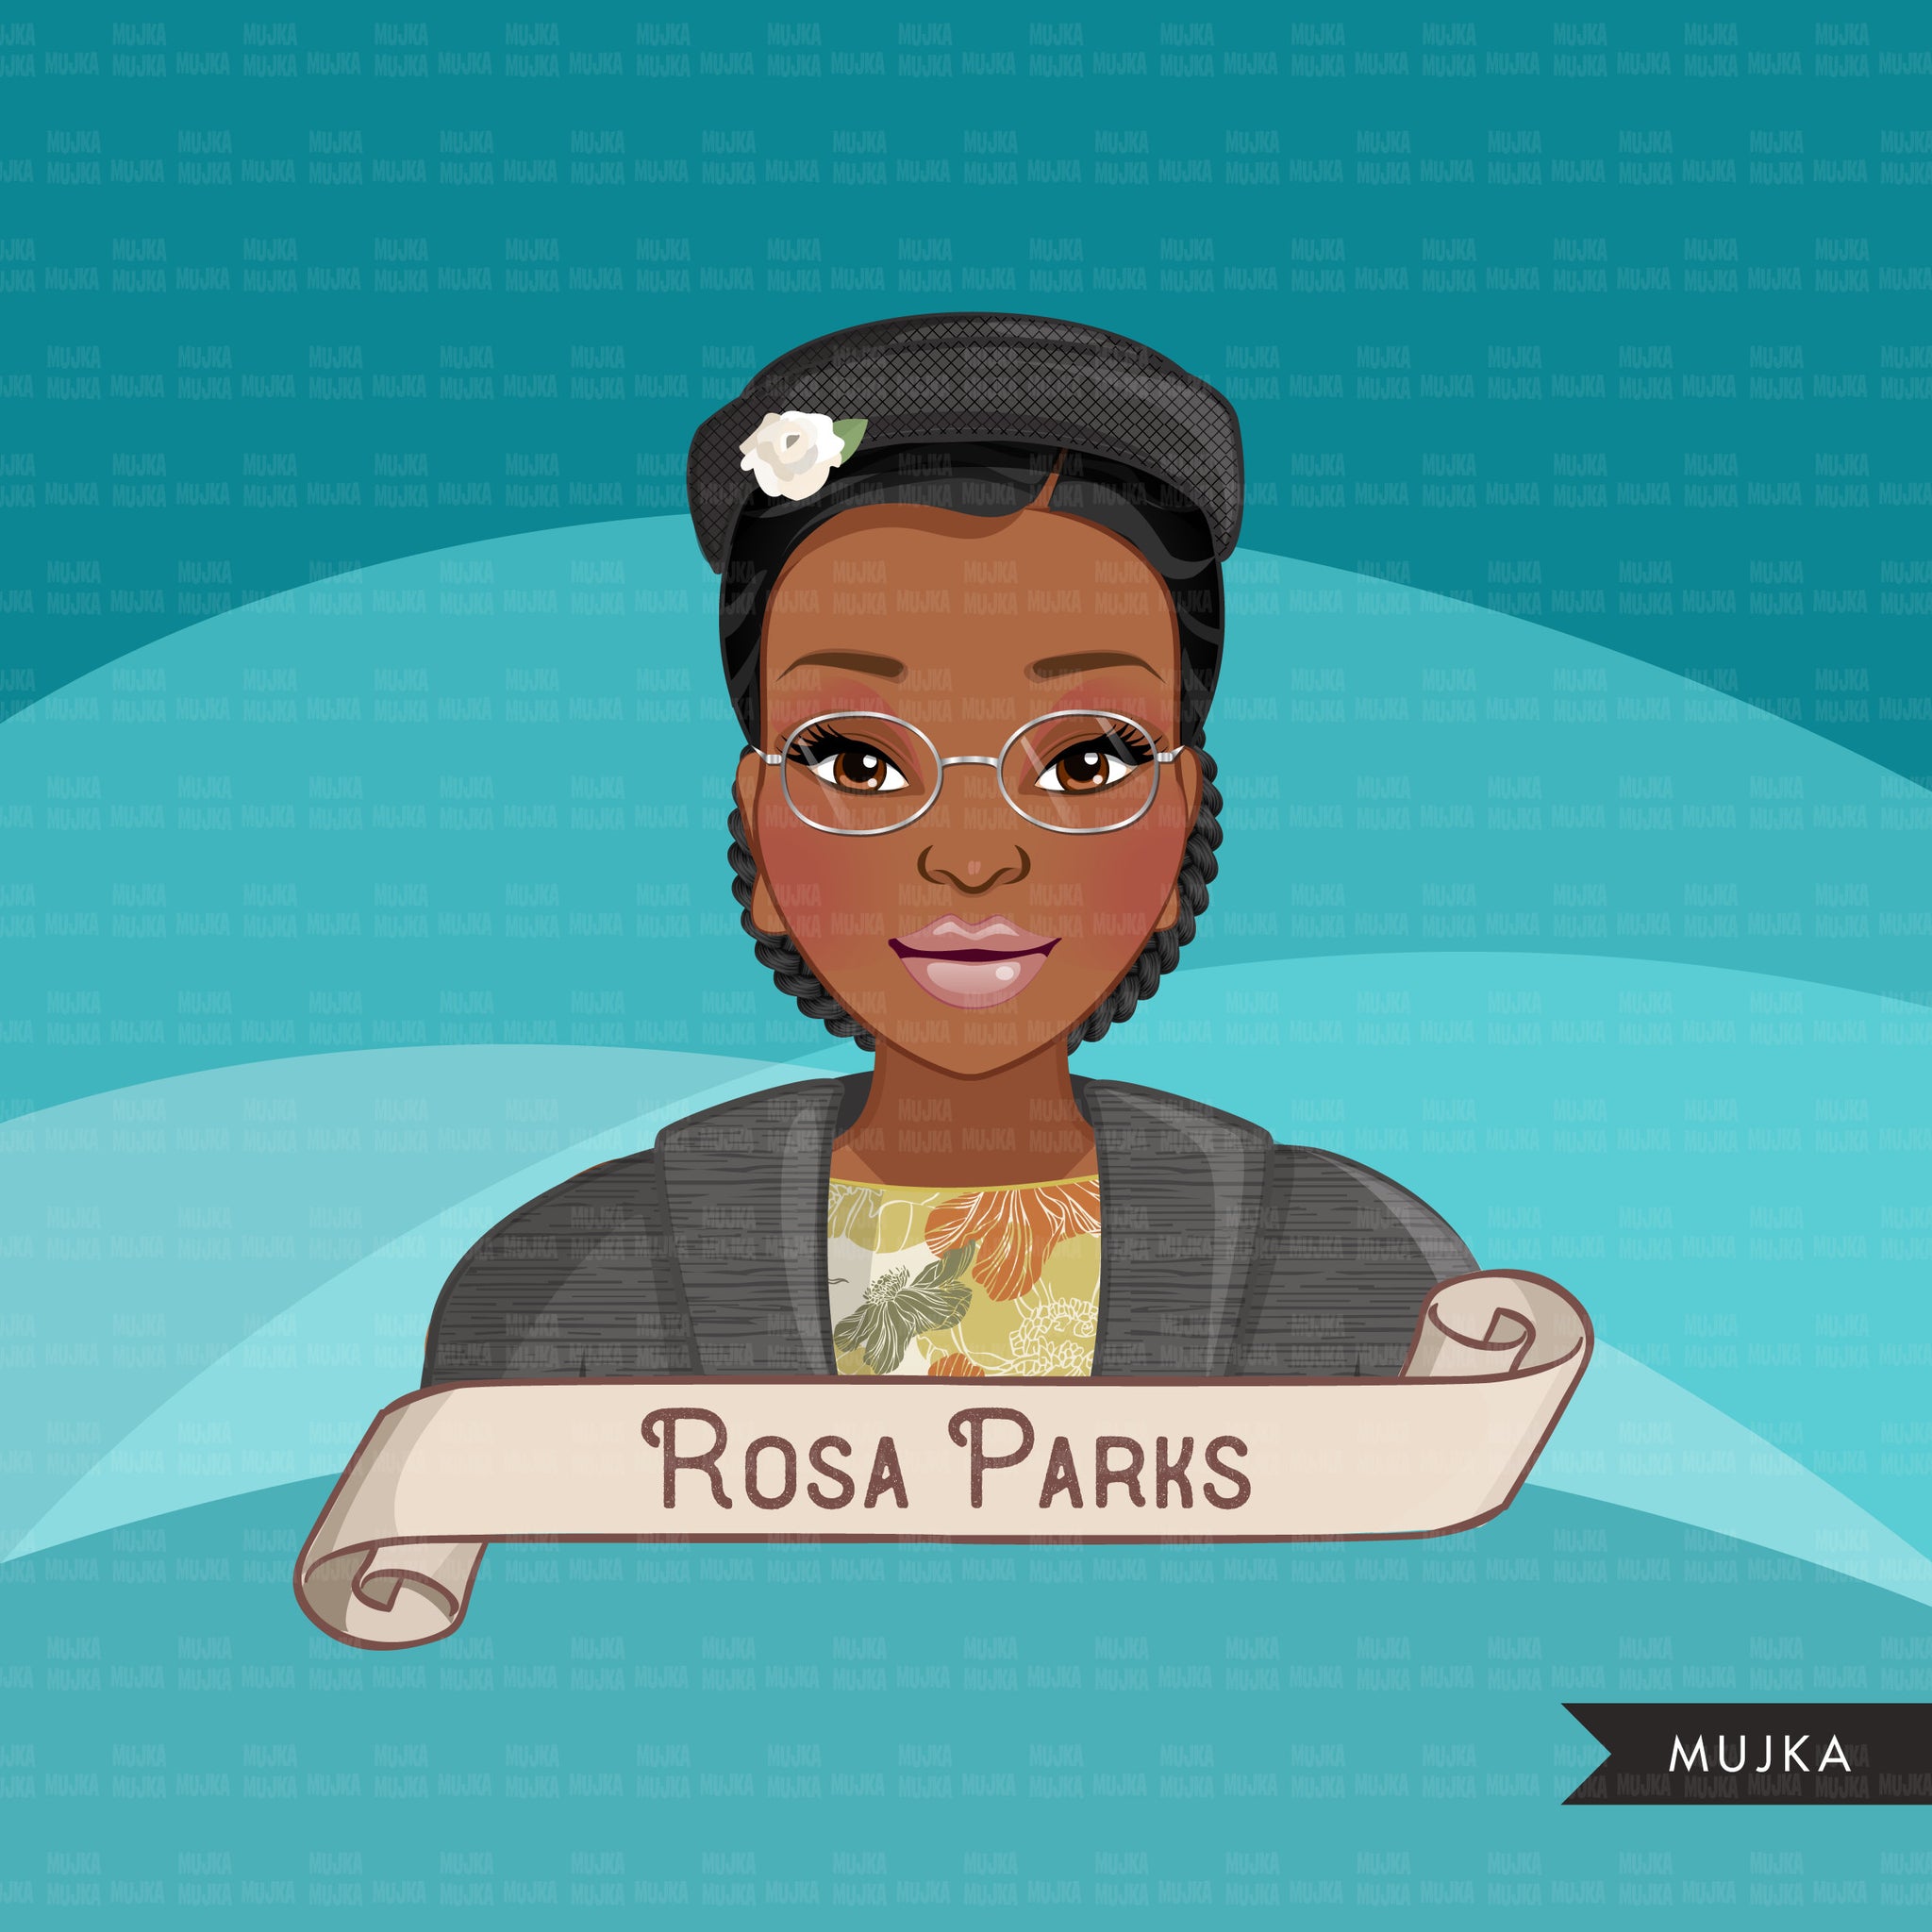 Clipart de história negra, mulher negra, figuras da justiça social, Rosa Parks, Harriet Tubman, Maya Angelou, gráficos de história, uso comercial PNG